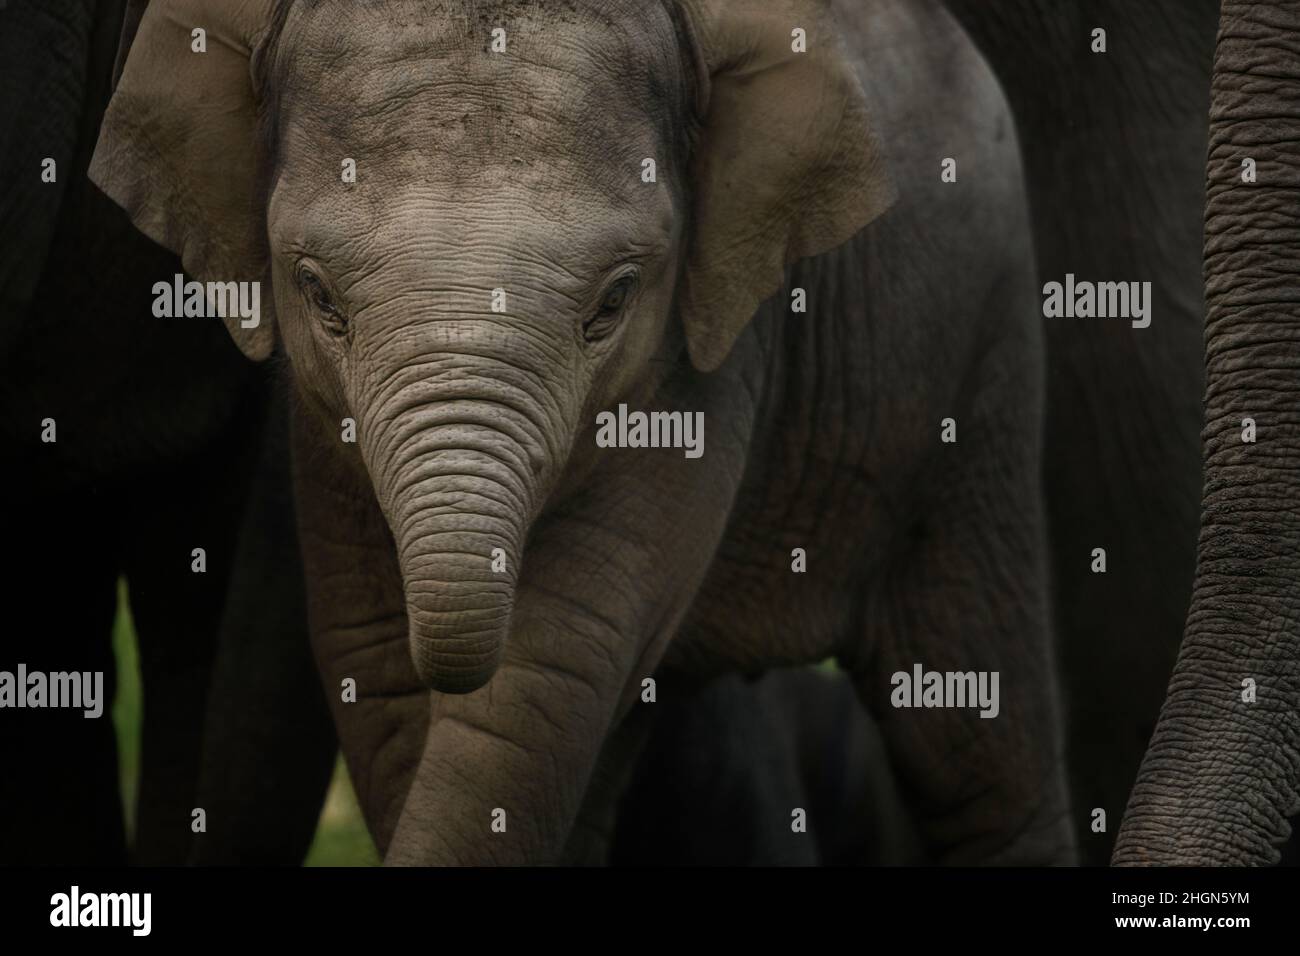 Primo piano di un polpaccio di elefante con un tronco arricciato Foto Stock